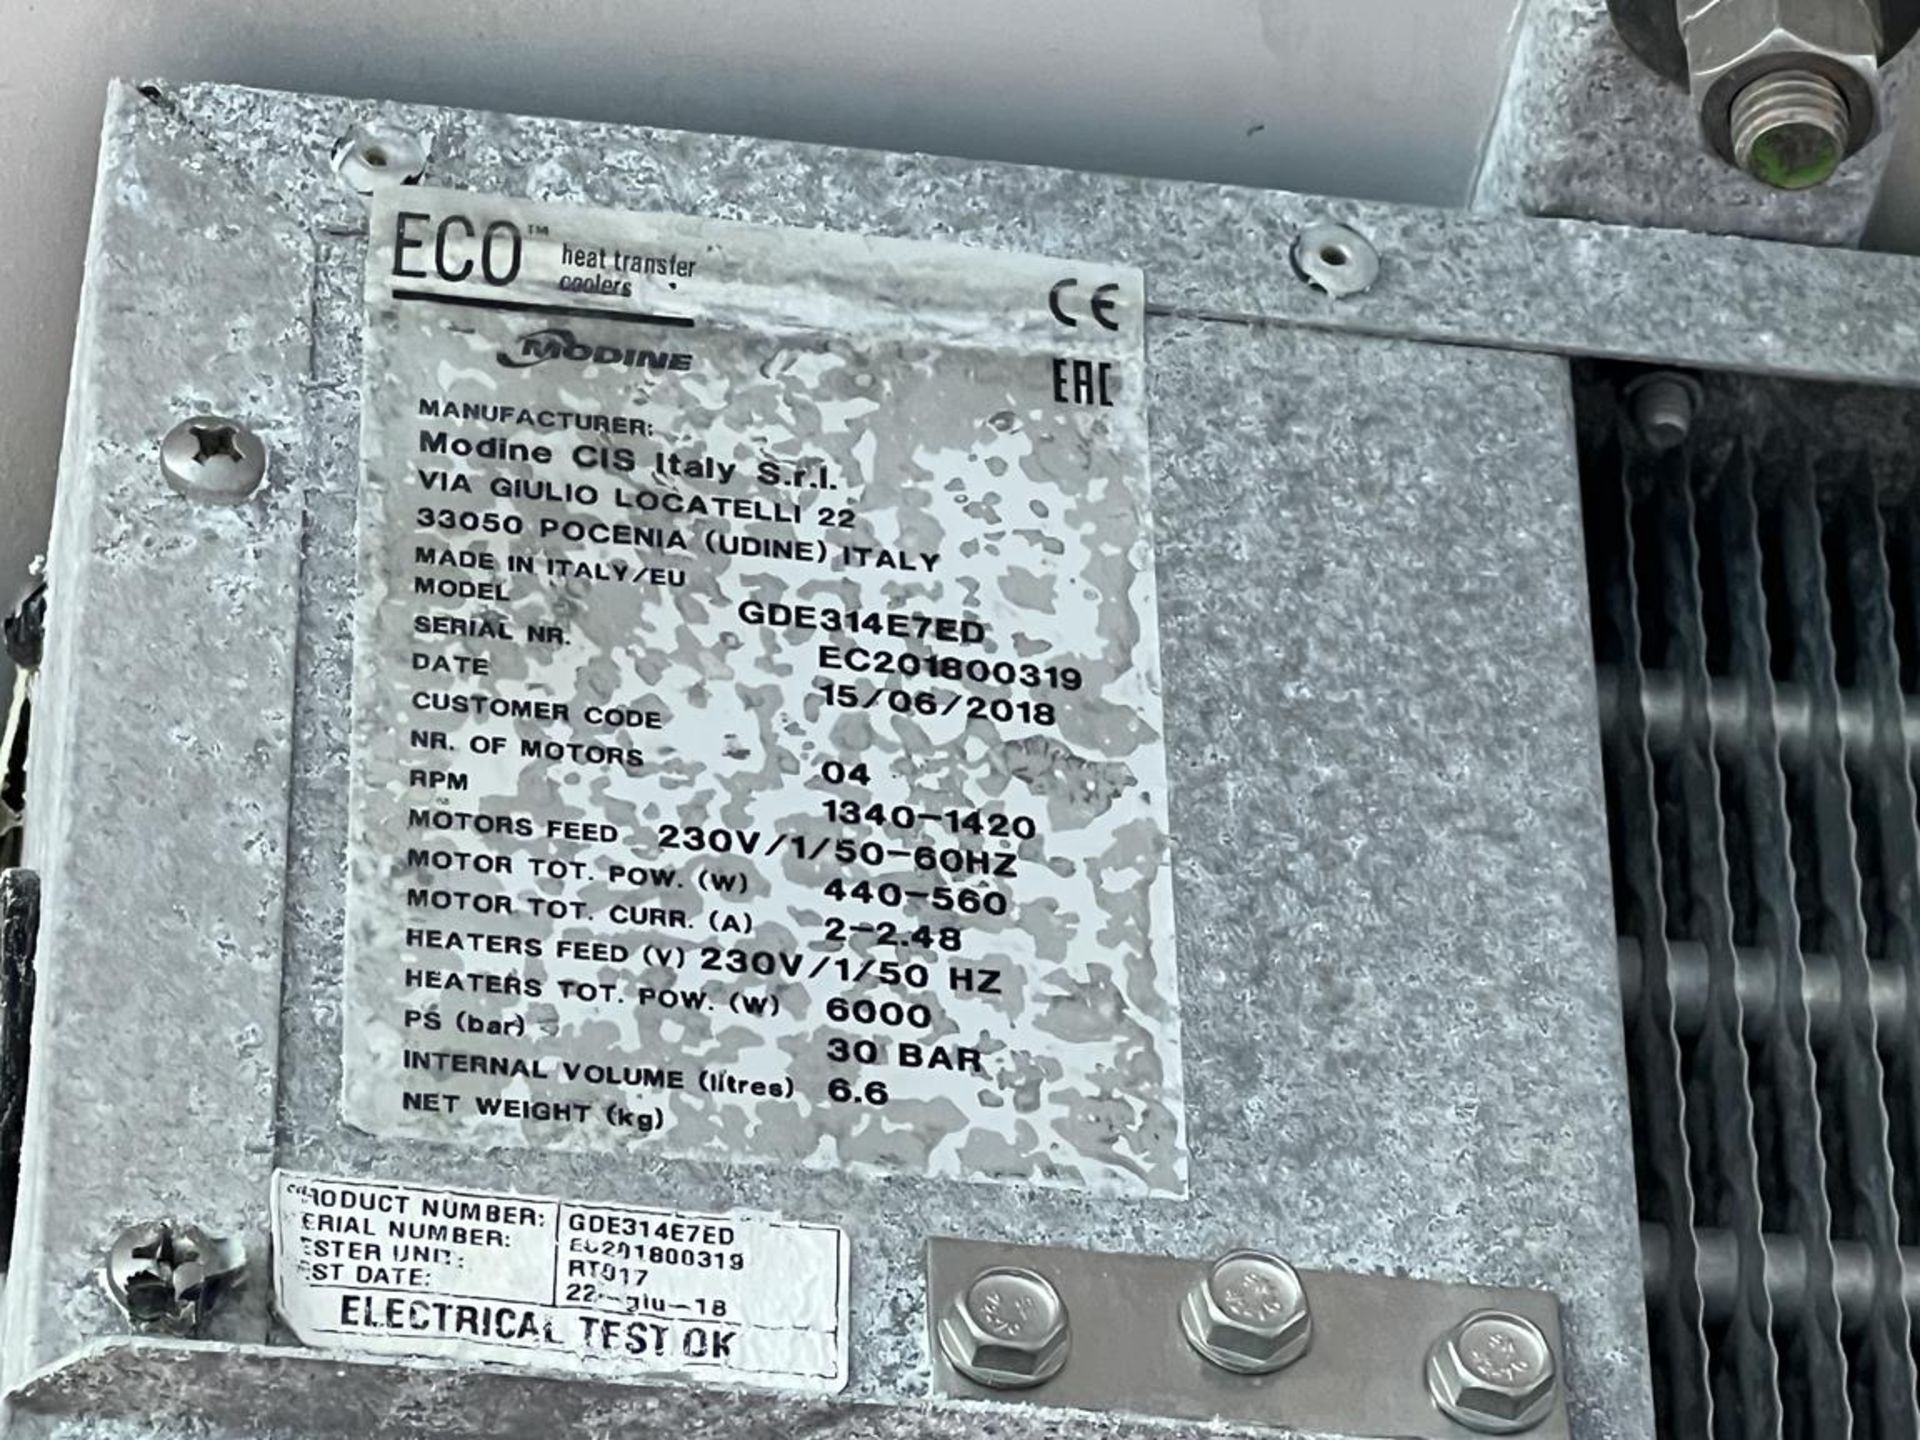 4x (no.) Eco Modine GDE314 E7ED quad fan condensing units, Serial No. EC201800219, EC201800320, - Image 9 of 13